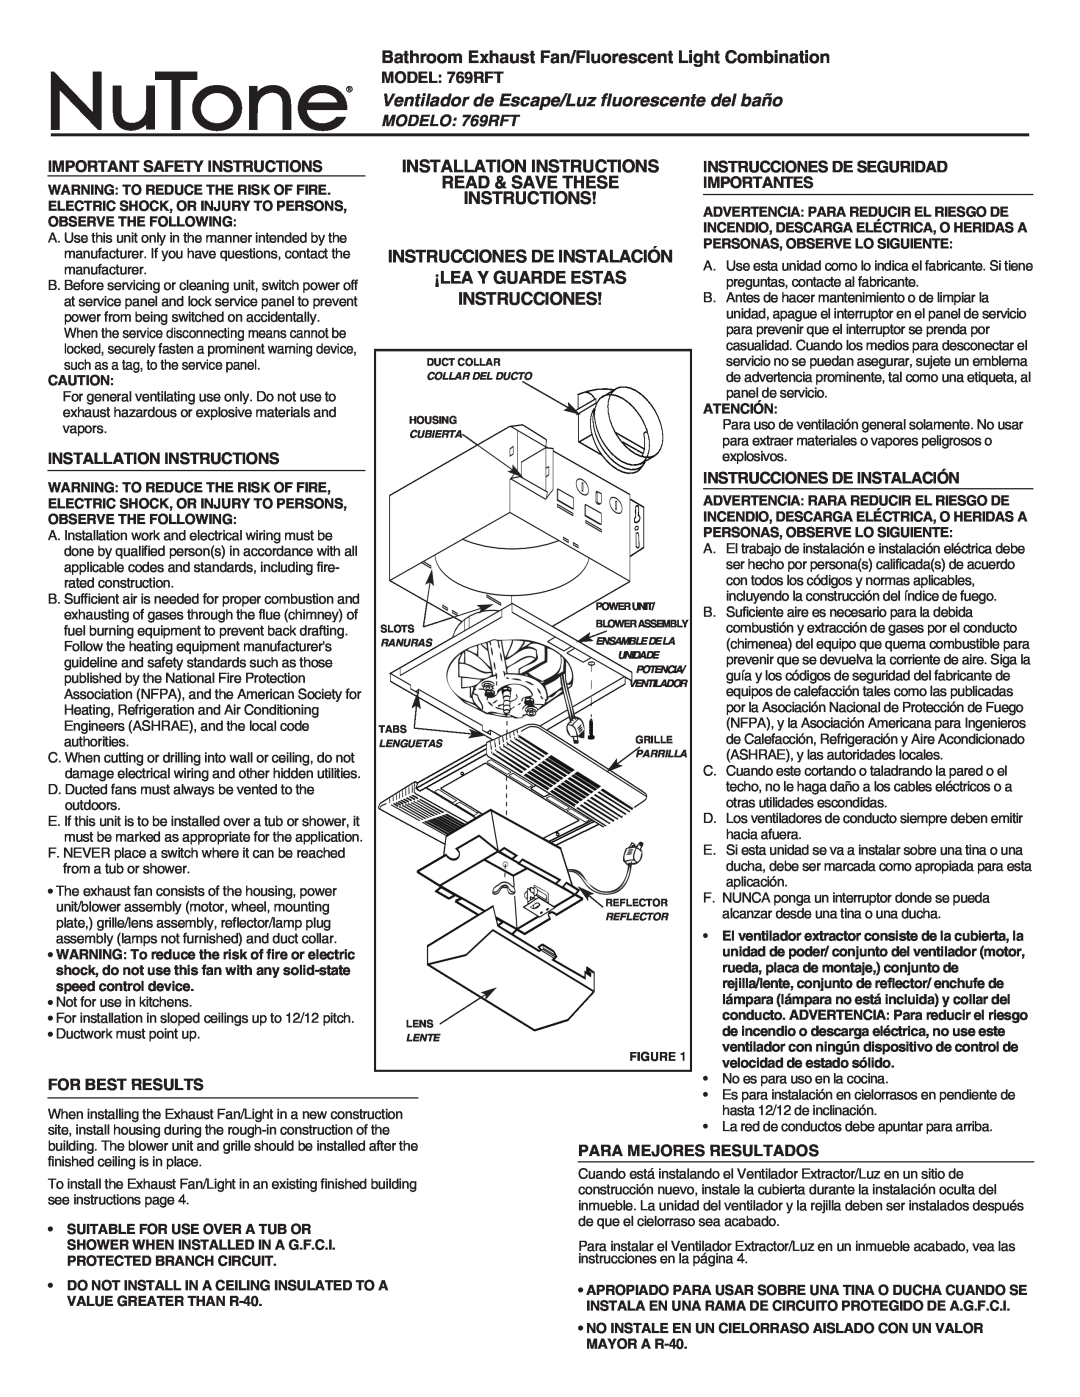 NuTone 769RFT important safety instructions Ventilador de Escape/Luz fluorescente del baño, Read & Save These 